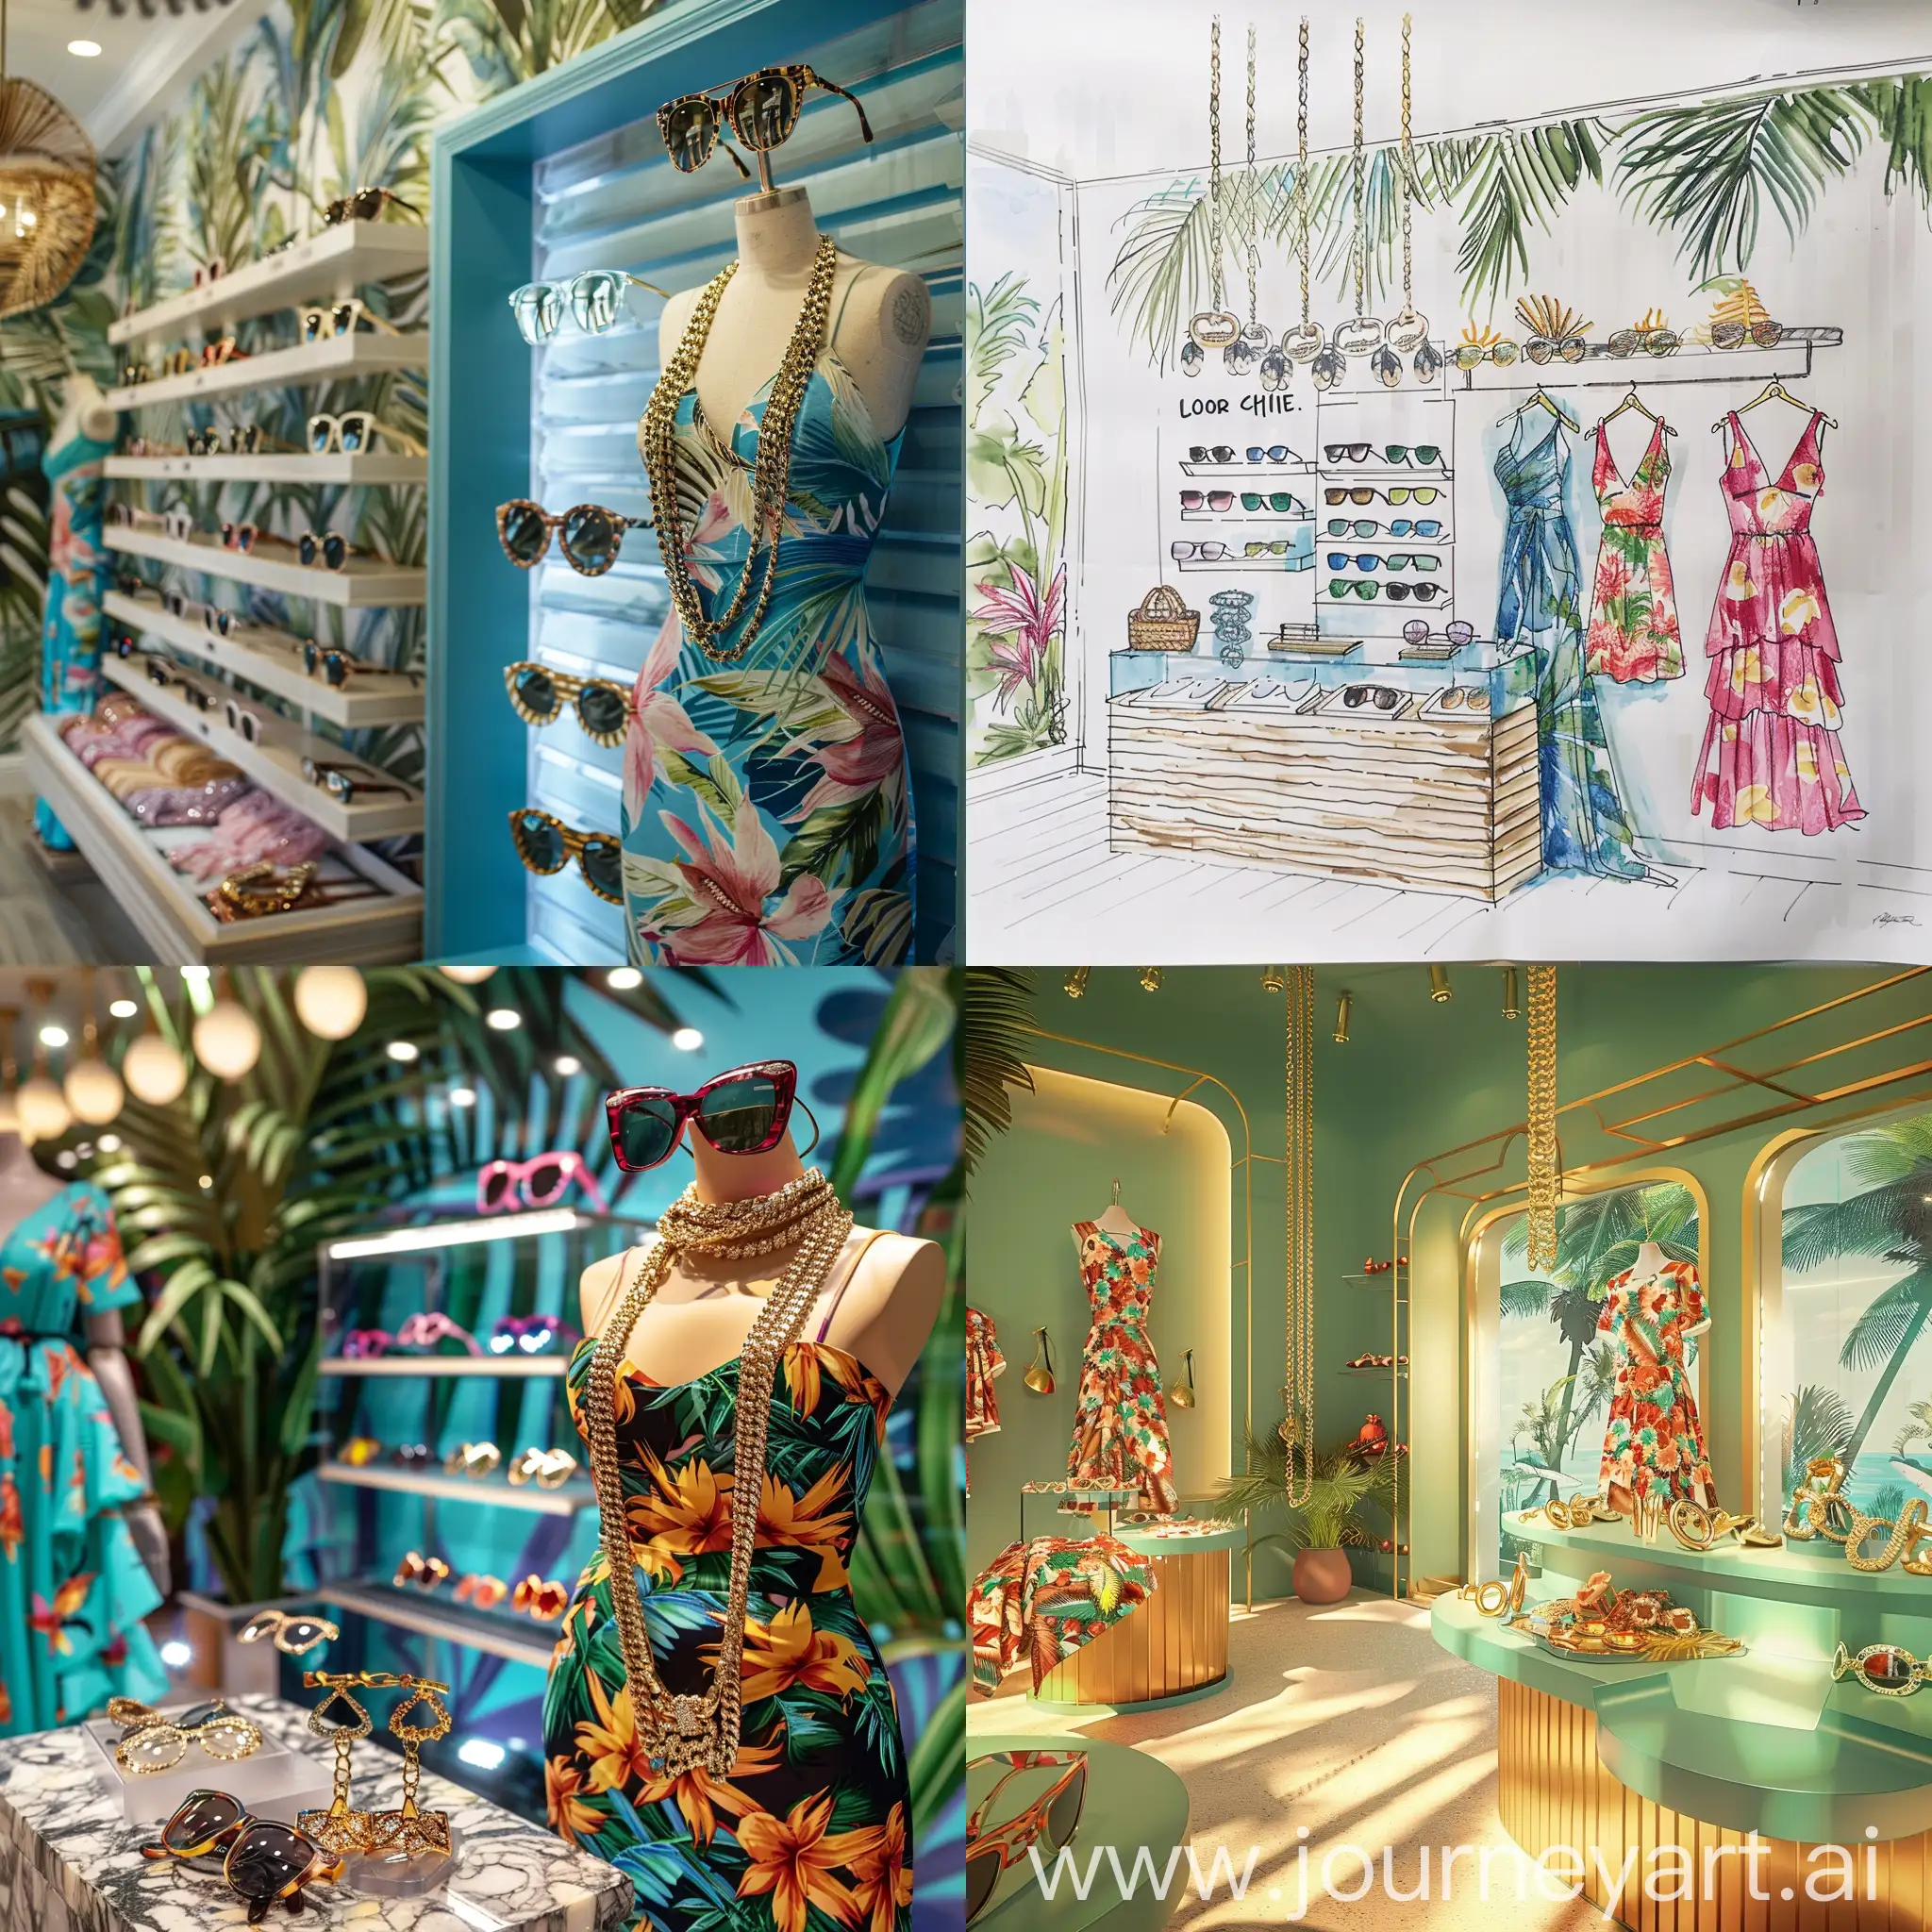 Quiero los planos de una tienda tropical, donde se vende accesorios de playa, cadenas, lentes de sol, vestidos de muy alto prestigio que se llama tropic chic